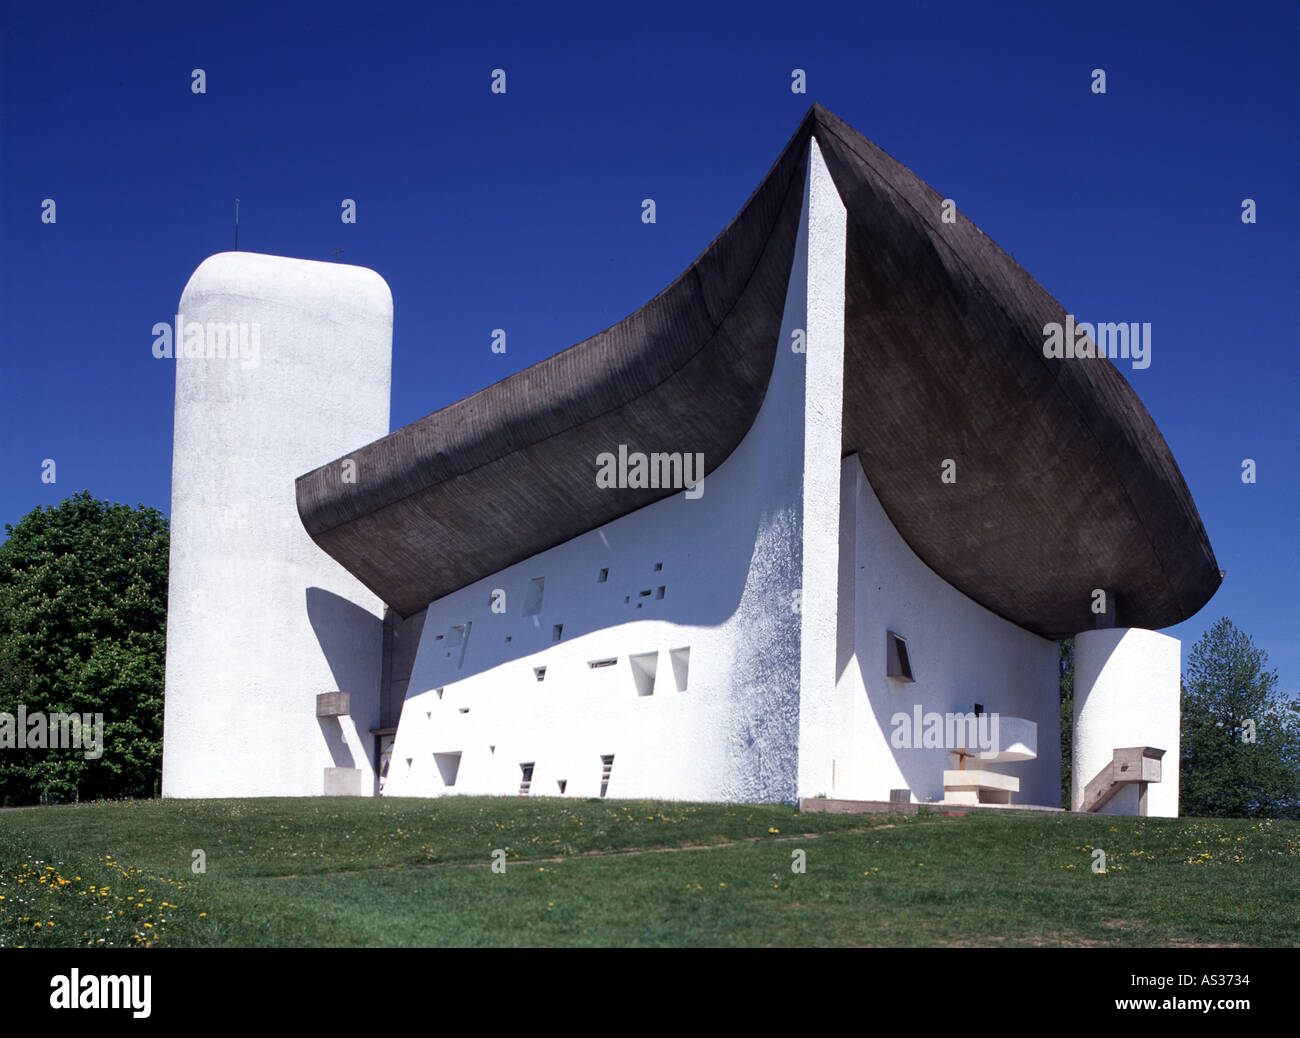 Ronchamp, Wallfahrtskirche Notre-Dame du Haut, Architekt: Le Corbusier 1954 Foto de stock